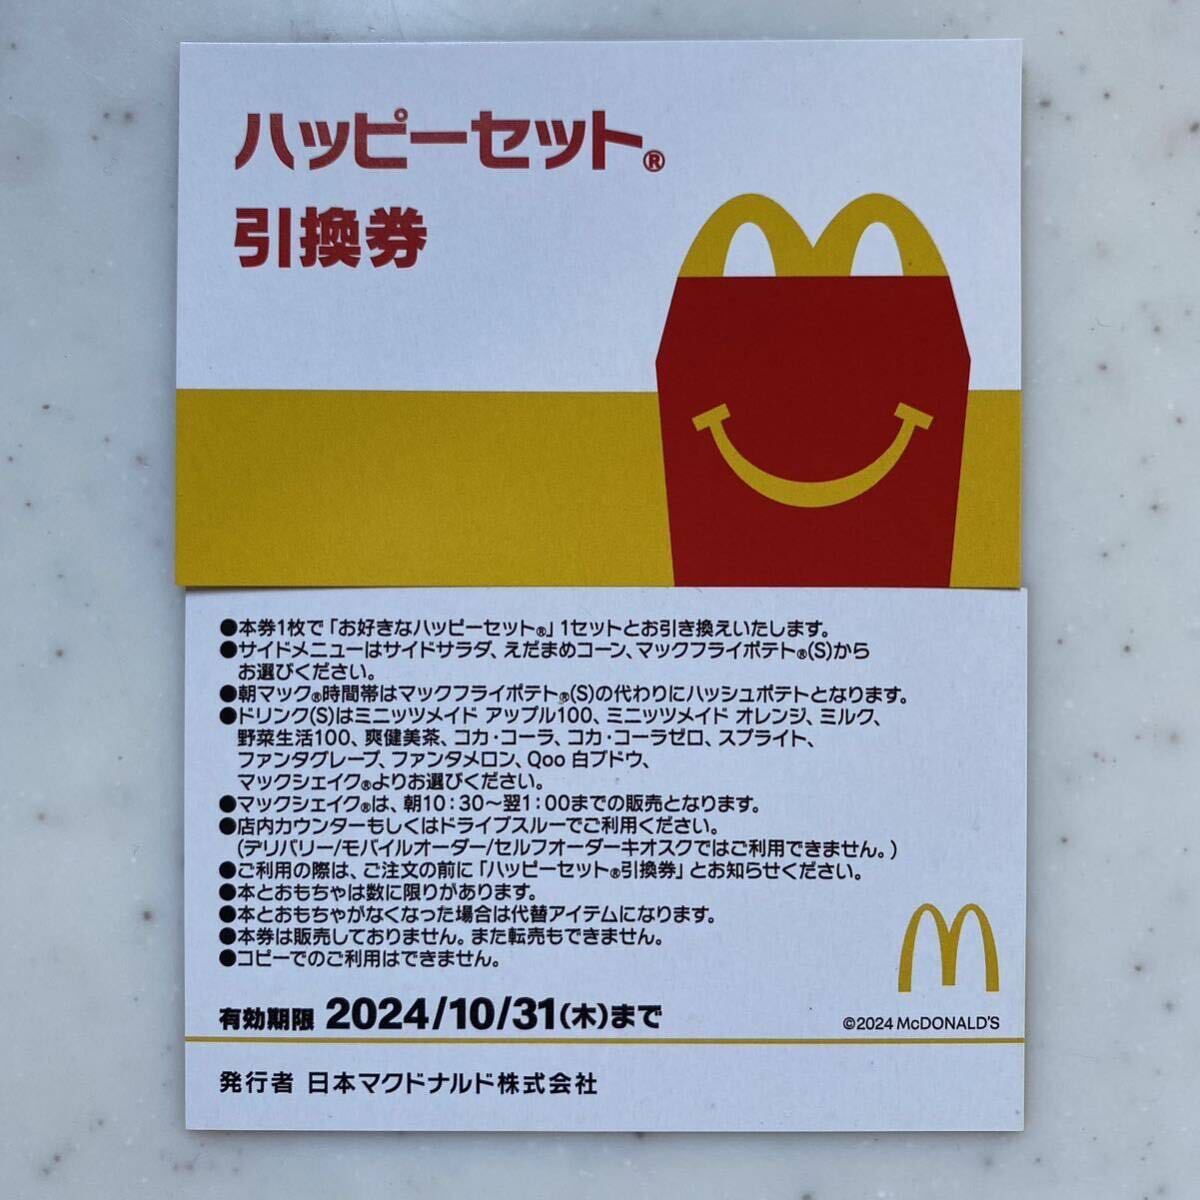  McDonald's лотерейный мешок подарочный сертификат капот талон напиток талон 